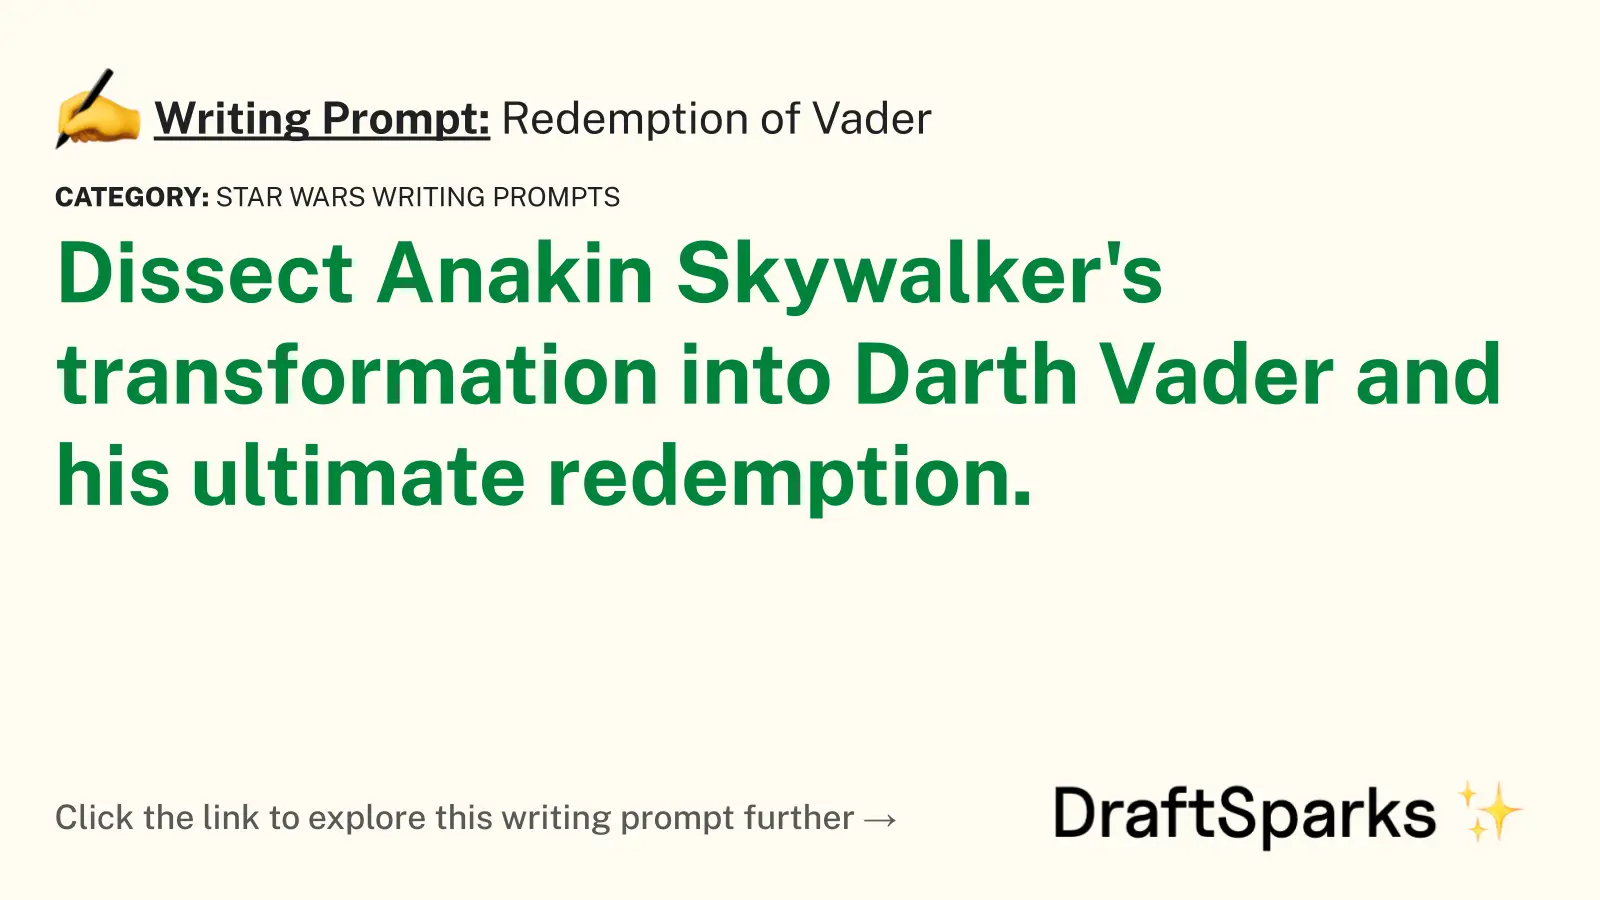 Redemption of Vader